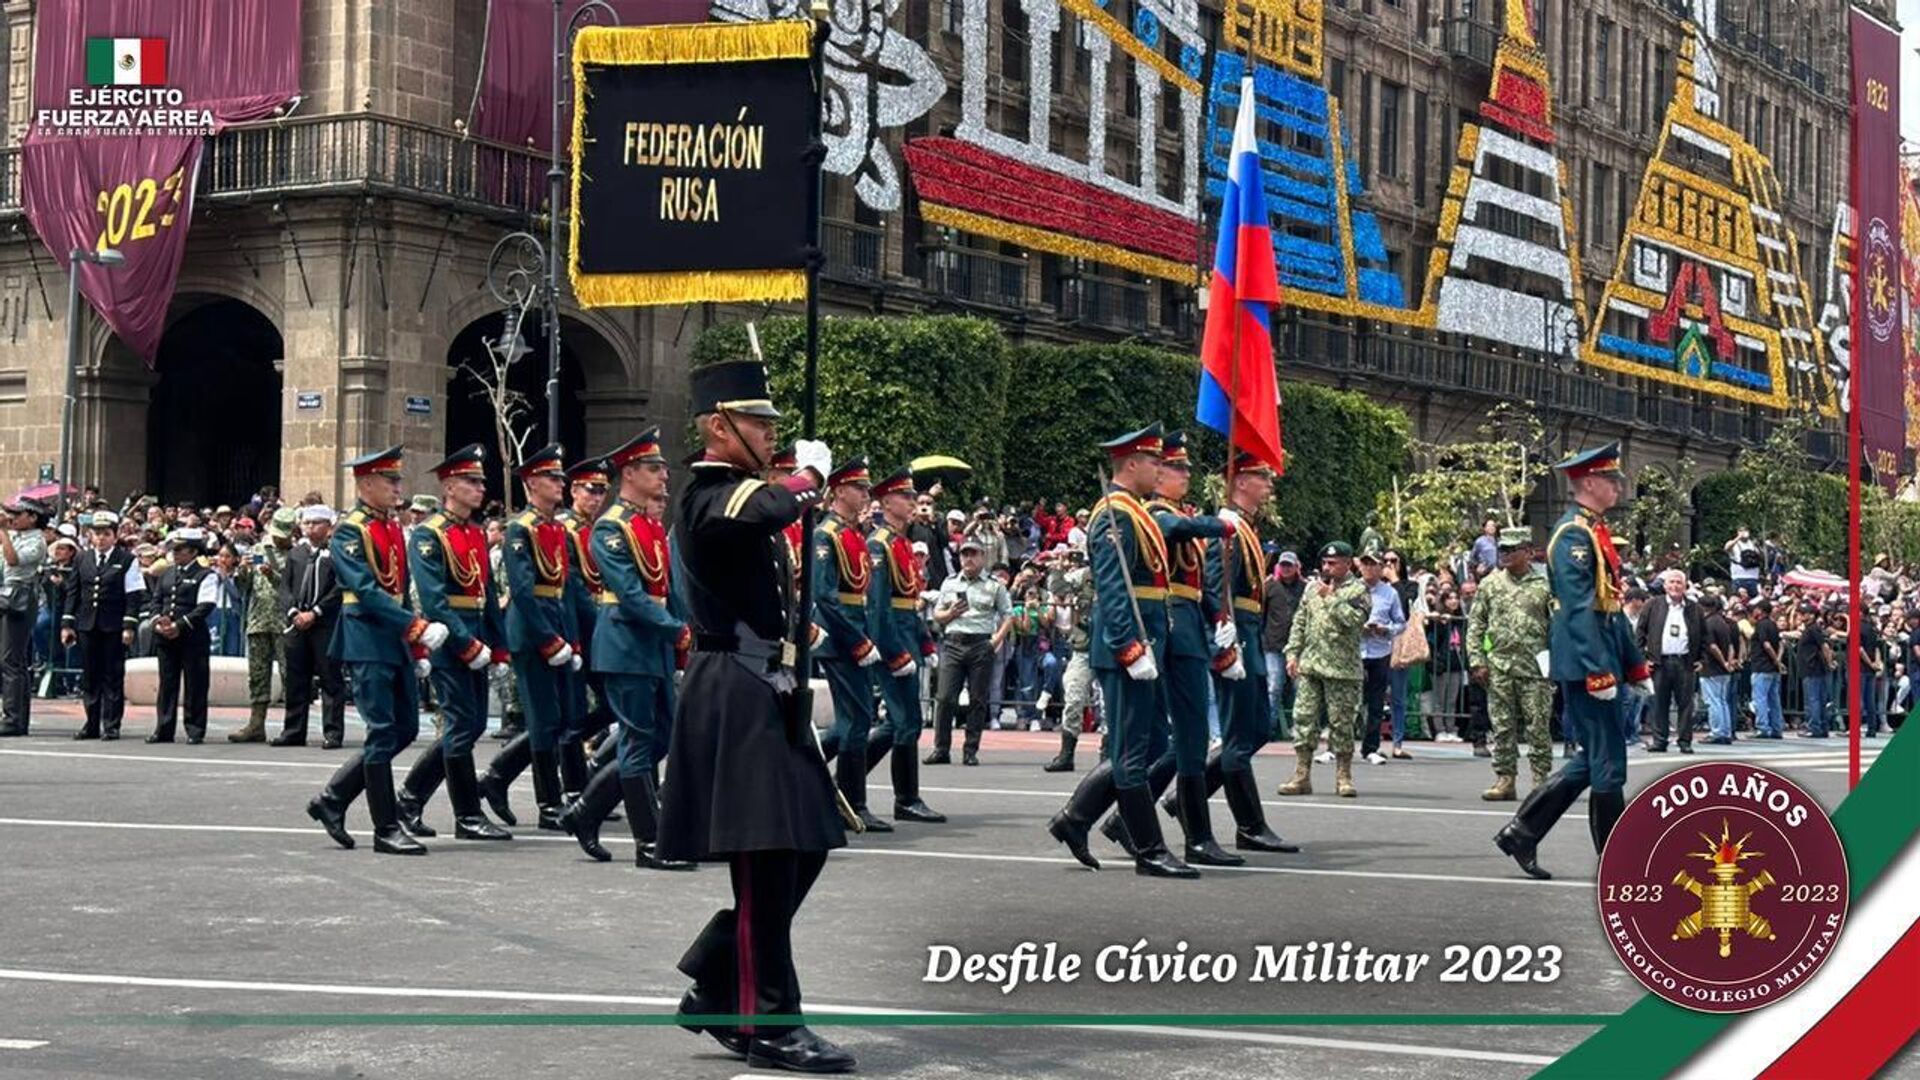 Un representativo del ejército de la Federación rusa participó en el desfile cívico militar en México. - Sputnik Mundo, 1920, 16.09.2023